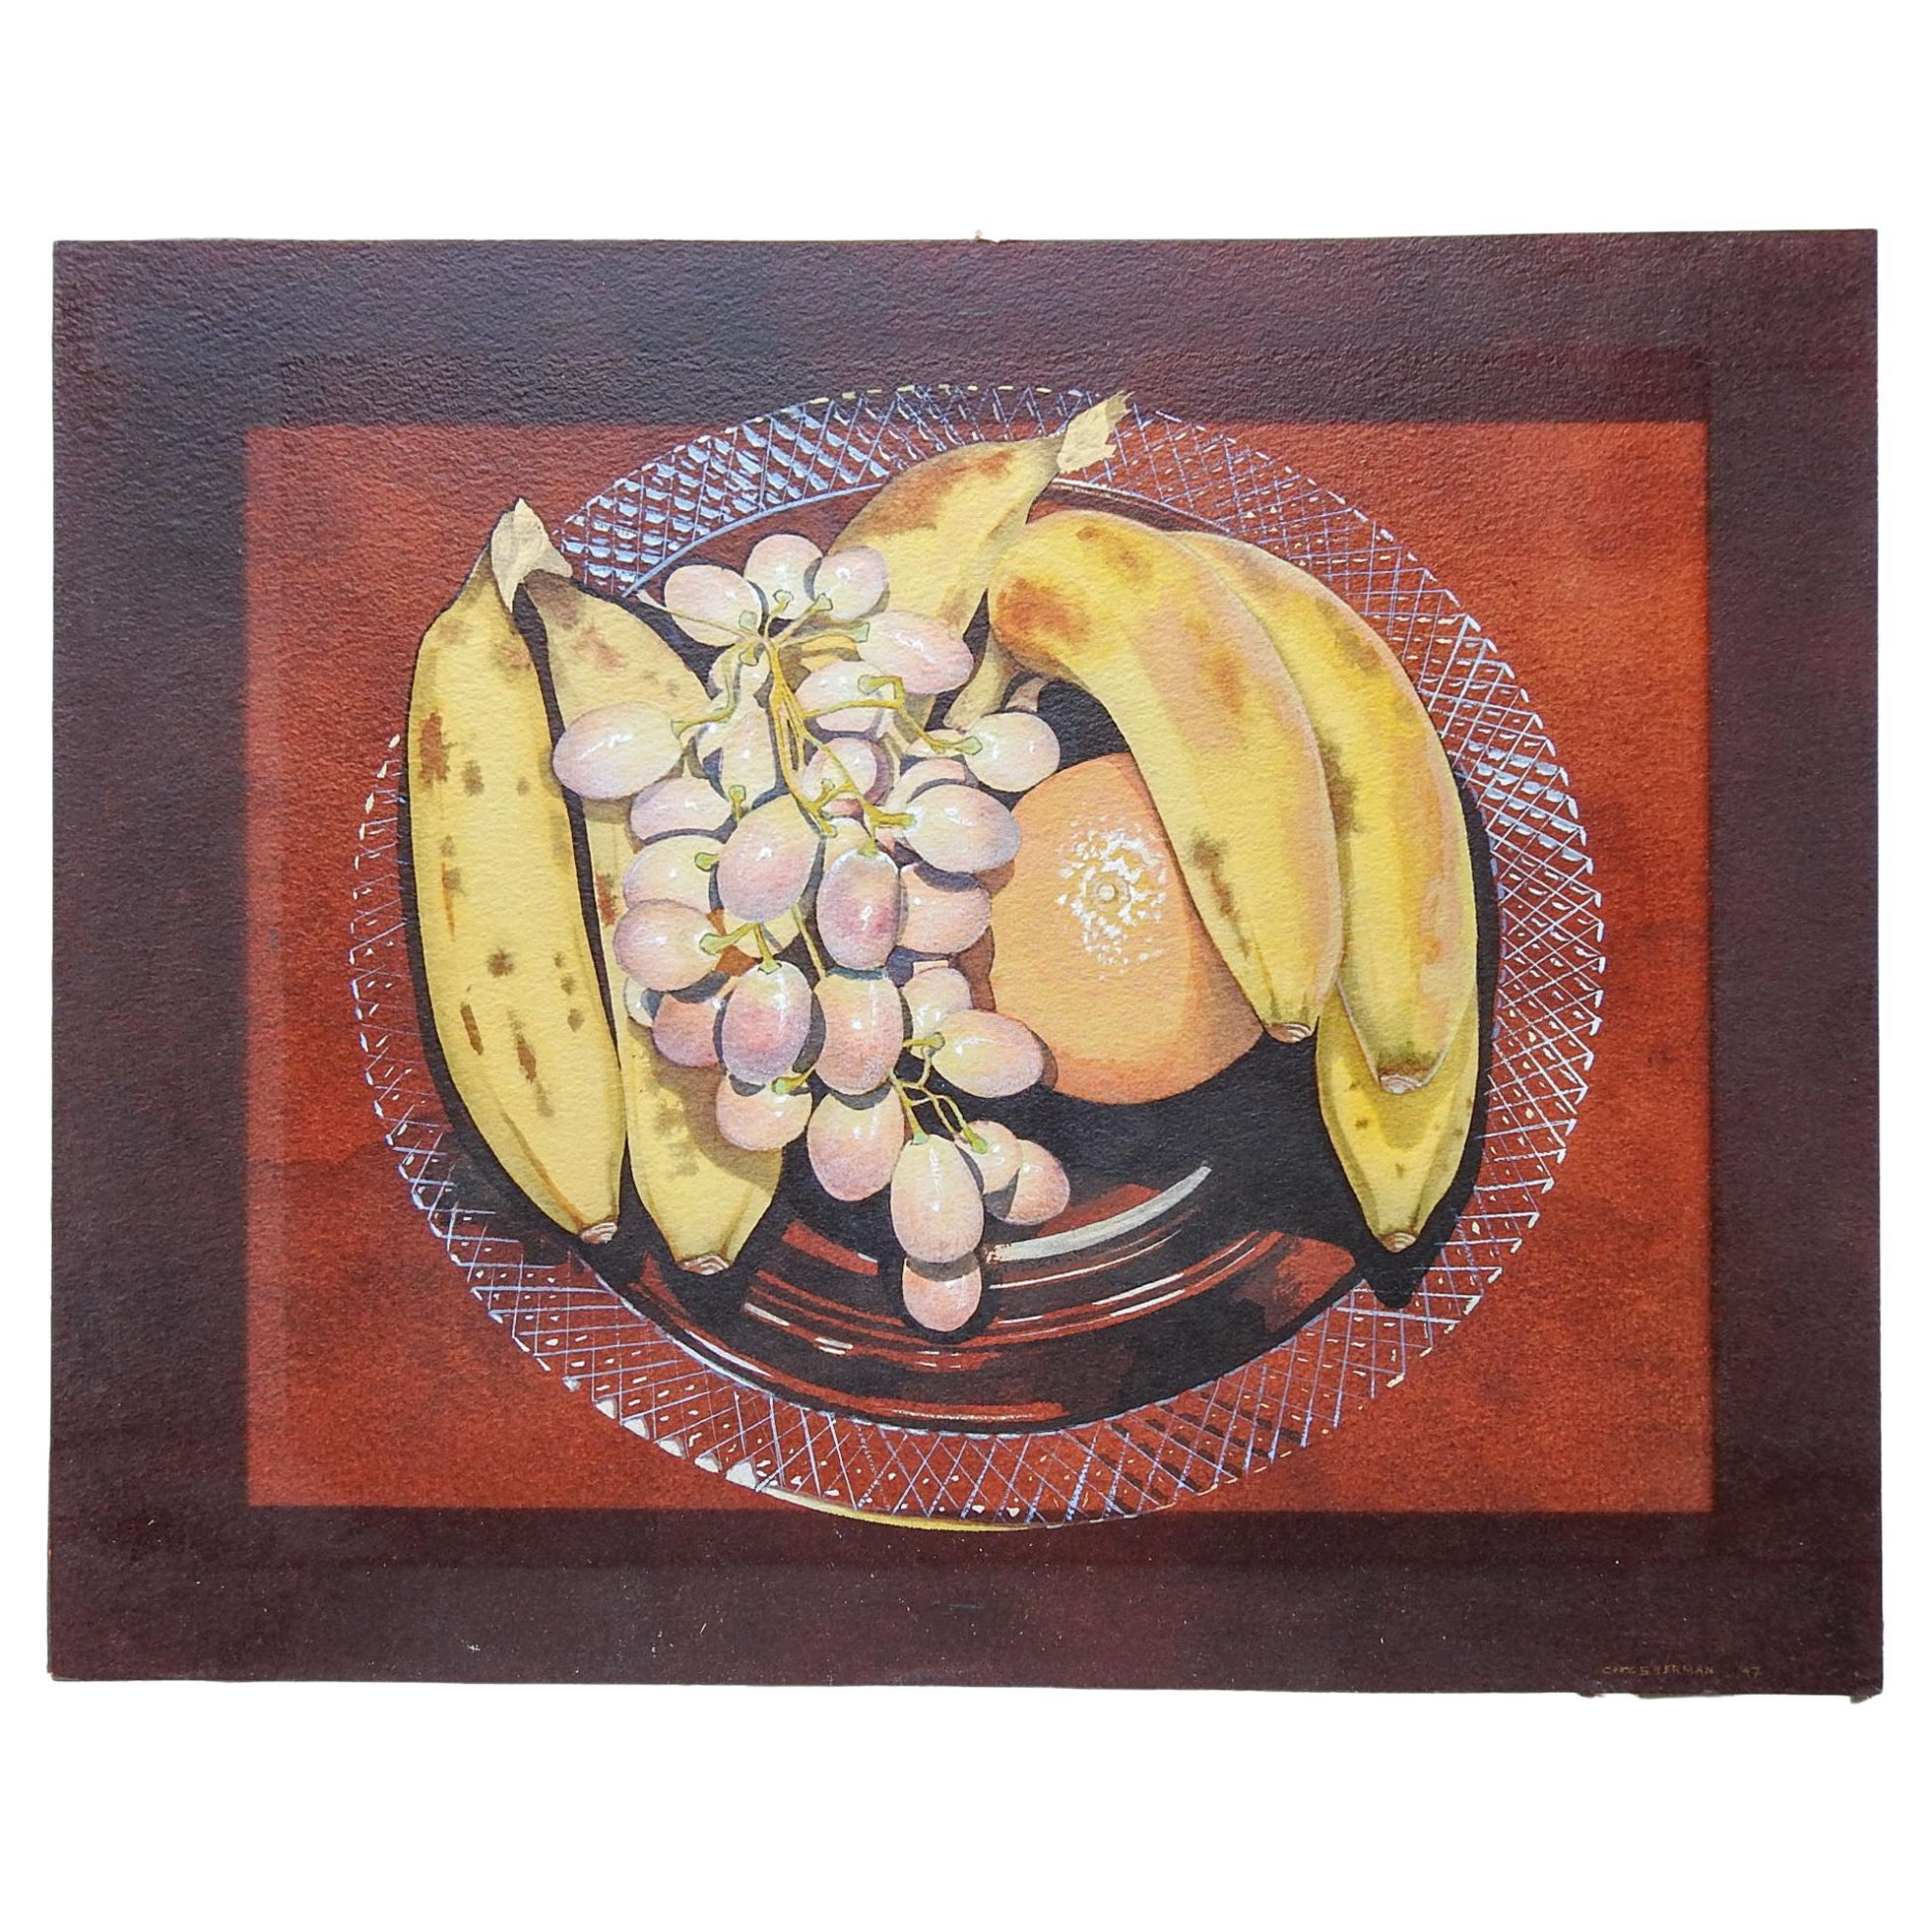 Peinture de nature morte vintage avec bananes et raisins